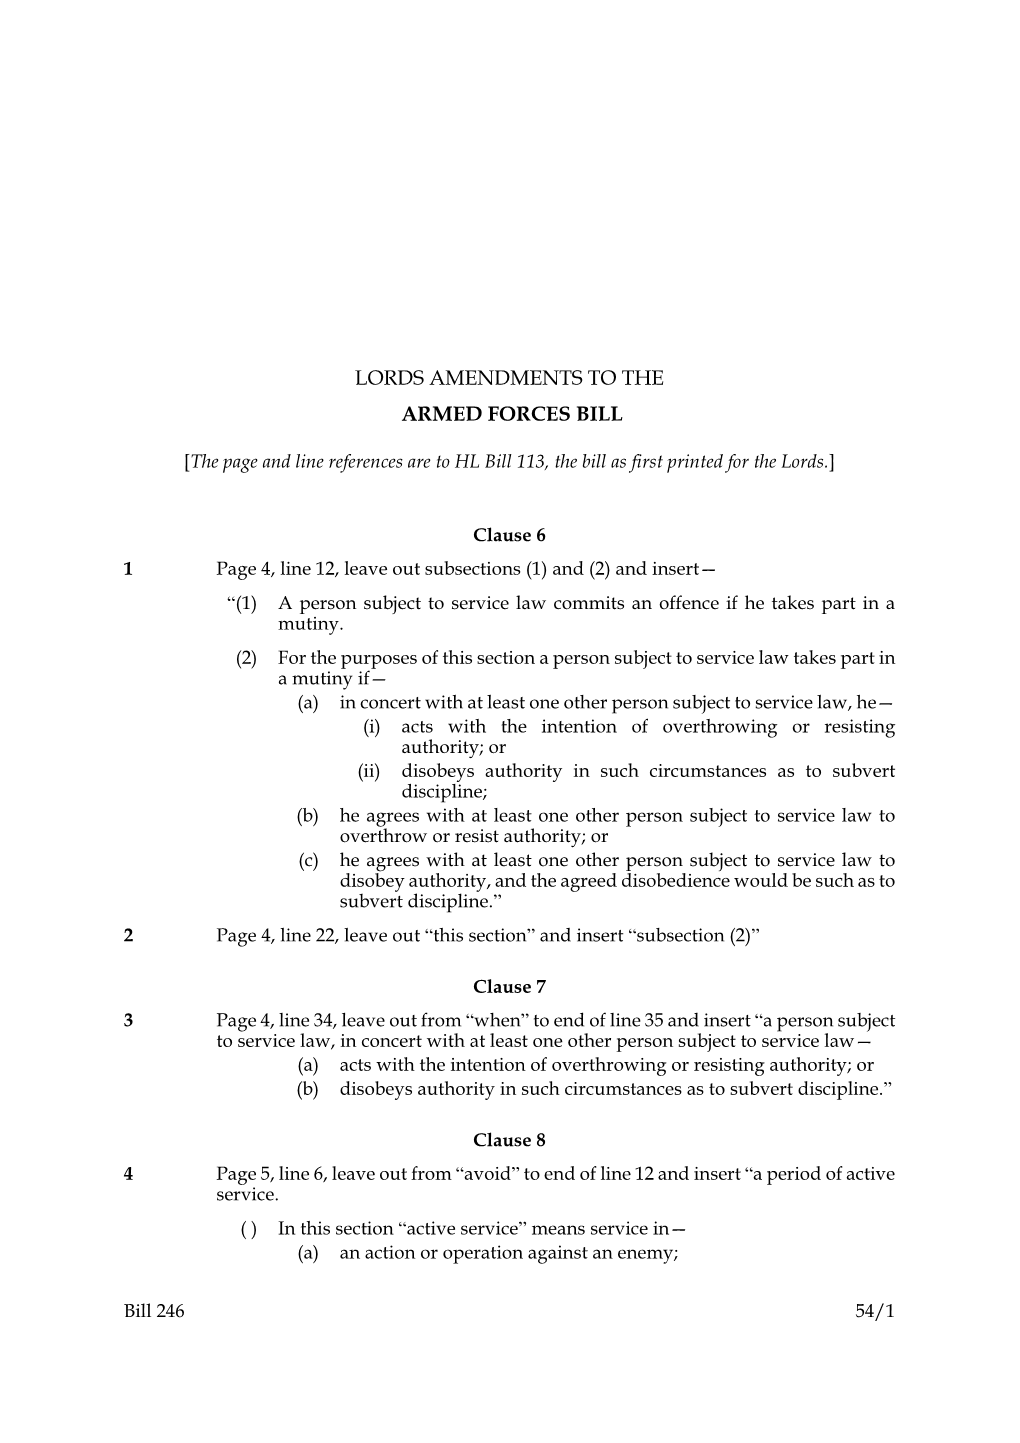 Bill 246 2005-06 As at 6 November 2006